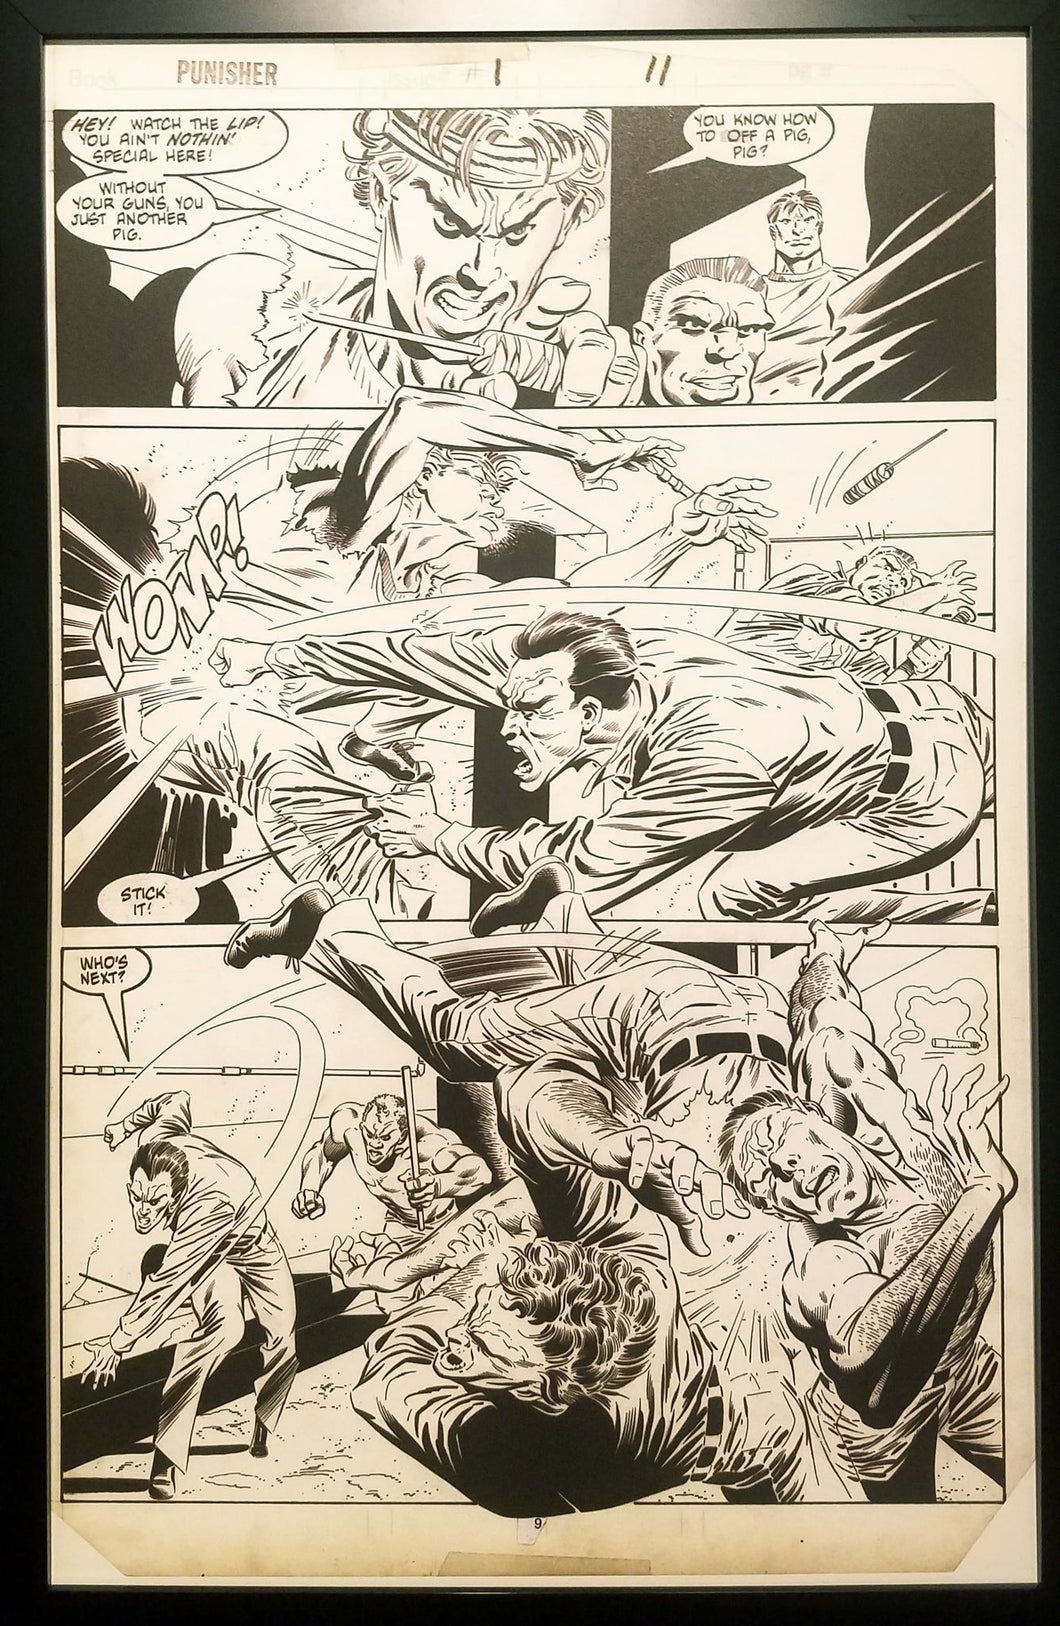 Punisher #1 pg. 11 by Mike Zeck 11x17 FRAMED Original Art Marvel Comics Poster